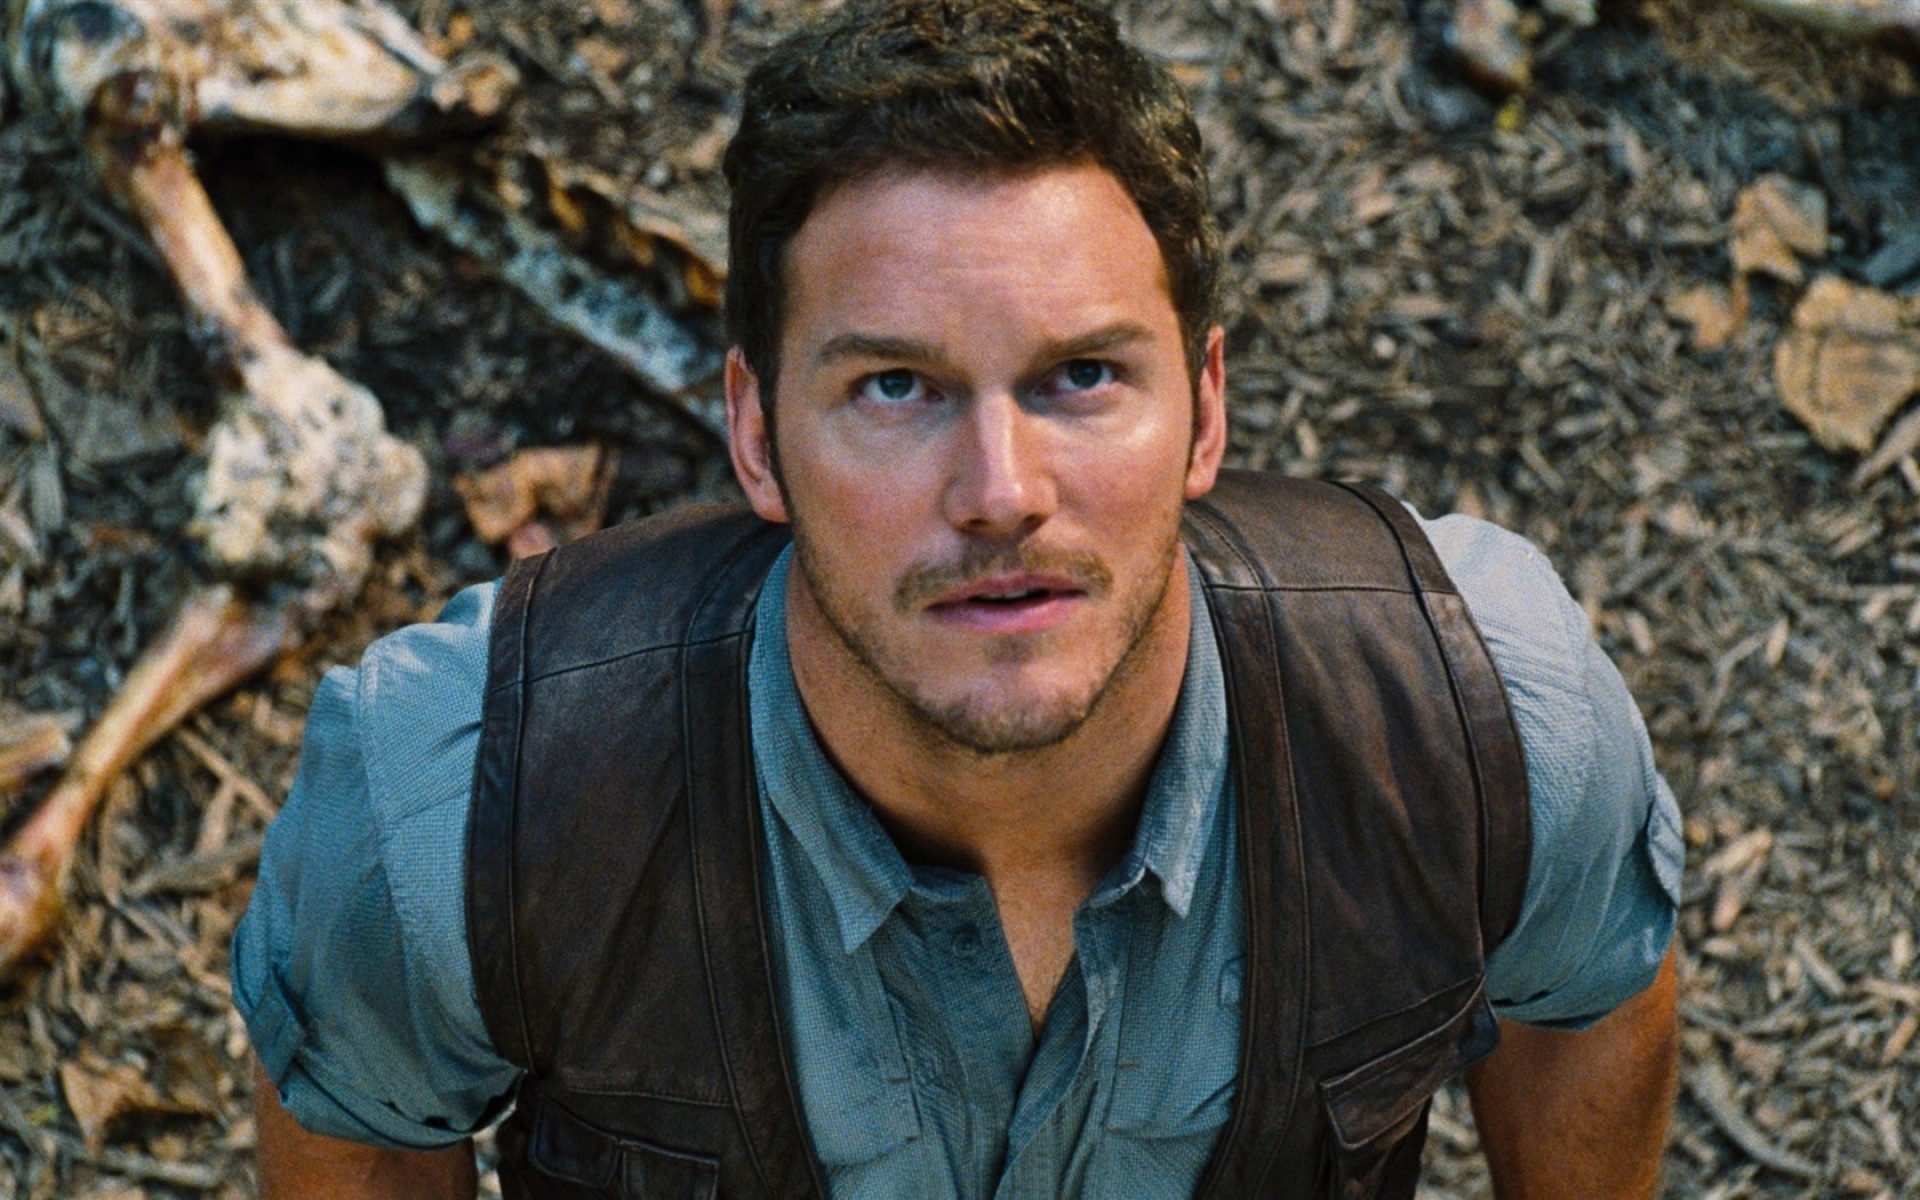 Chris Pratt Jurassic World , HD Wallpaper & Backgrounds